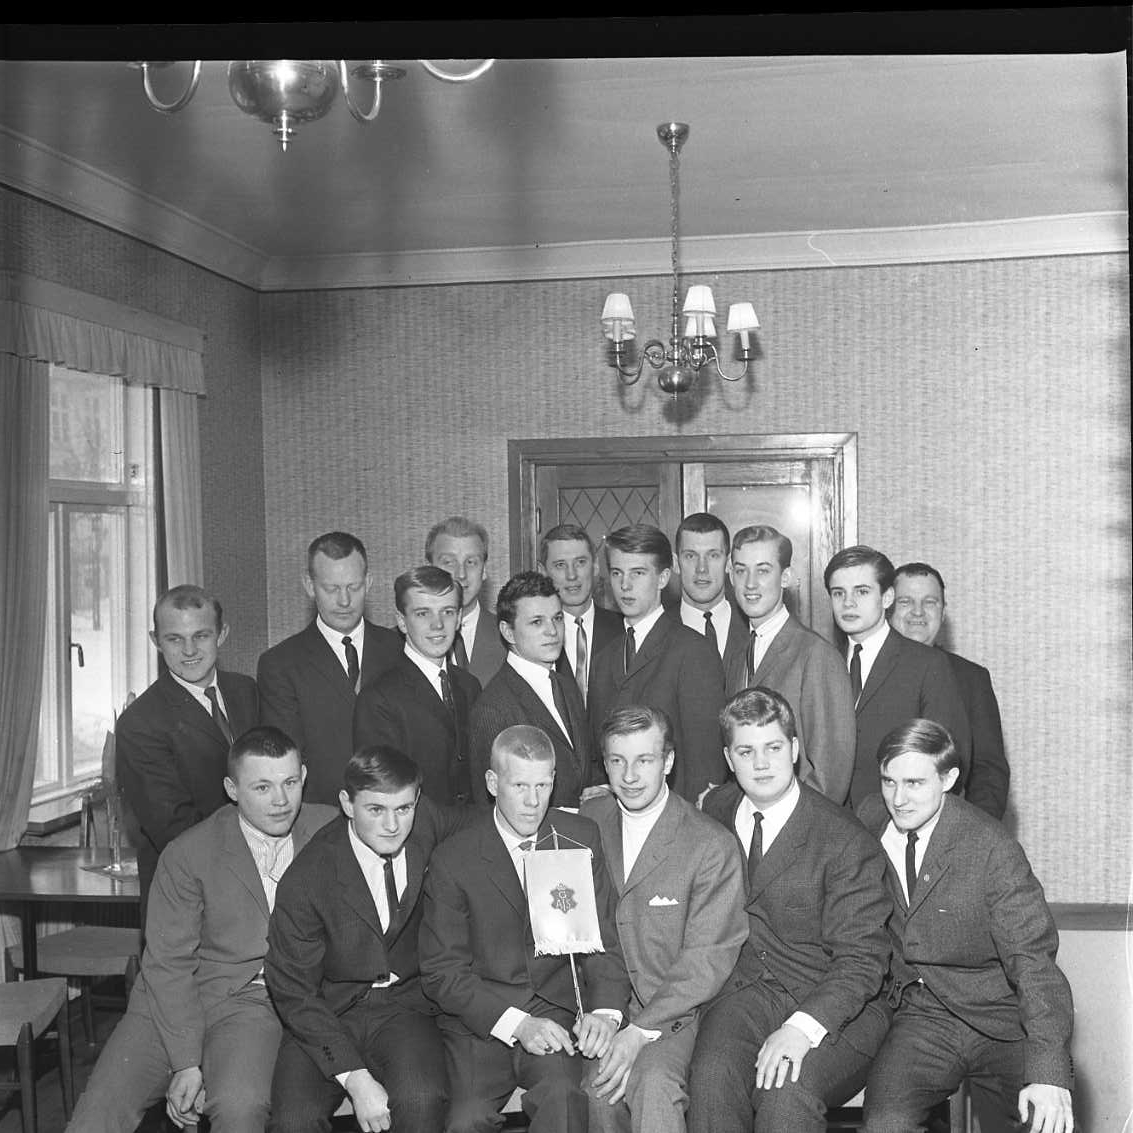 Gruppbild med 17 män, sittande och stående. Två i mitten längst fram håller ett standar med logo för GAIS, det vill säga Gränna AIS. Det är klubbens bandylag årgång 1966. Det är möjligen ett fotografi i samband med årsmöte för Gränna AIS.